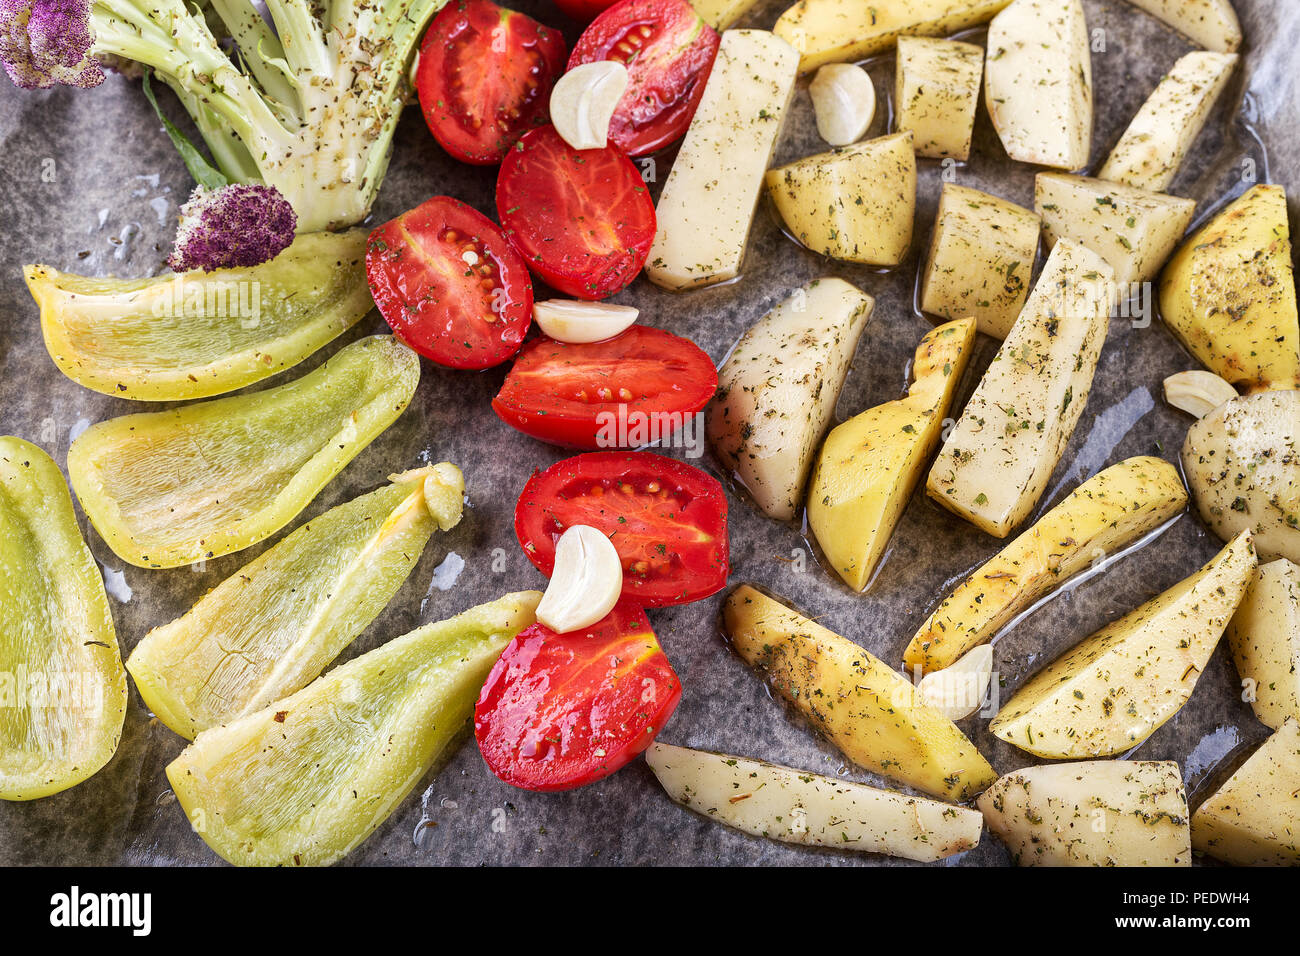 Herbst Mix aus Gemüse und Gewürze im Ofen gebacken, Kartoffeln, Paprika,  Tomaten, Blumenkohl Stockfotografie - Alamy